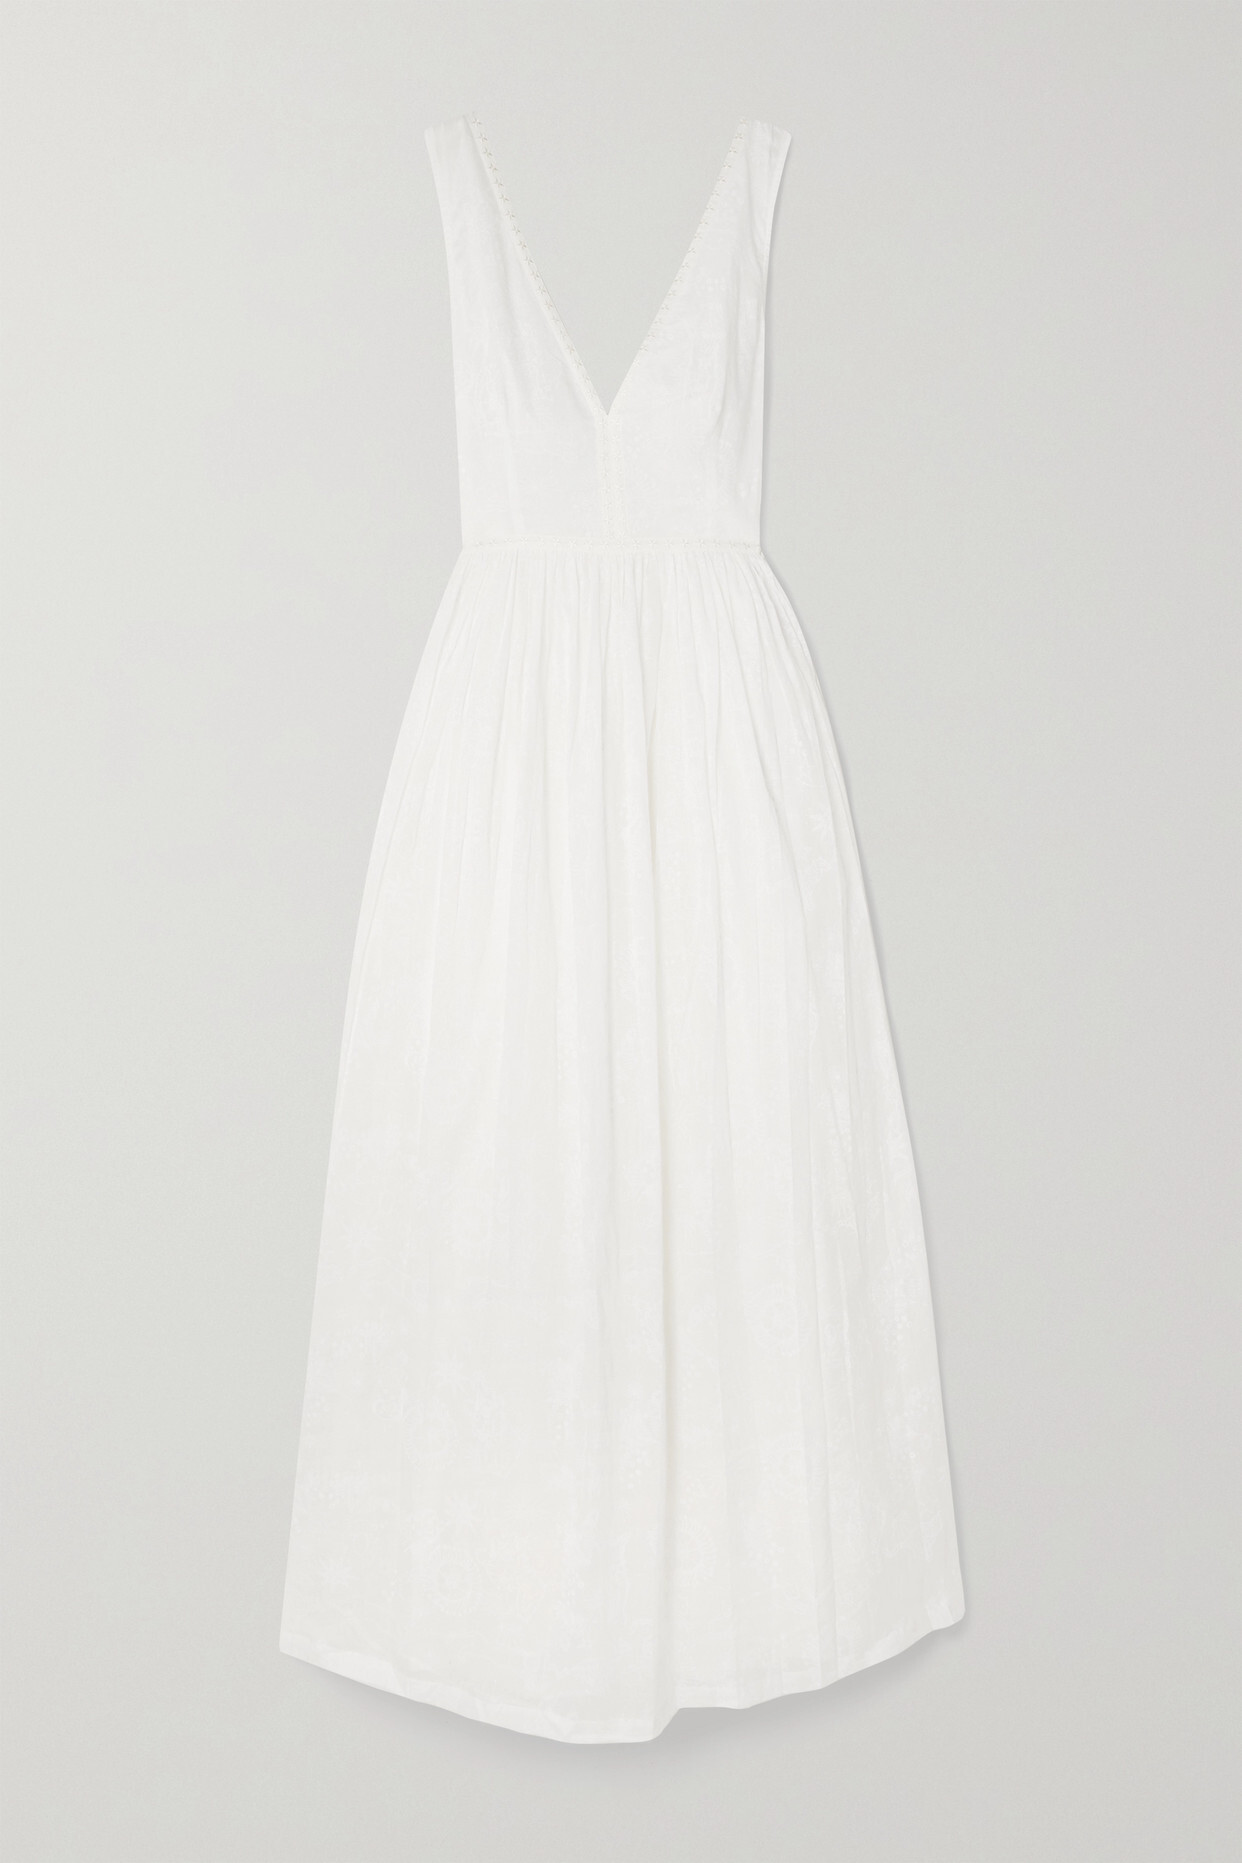 Emporio Sirenuse - Sophia Pleated Printed Cotton-voile Maxi Dress - White